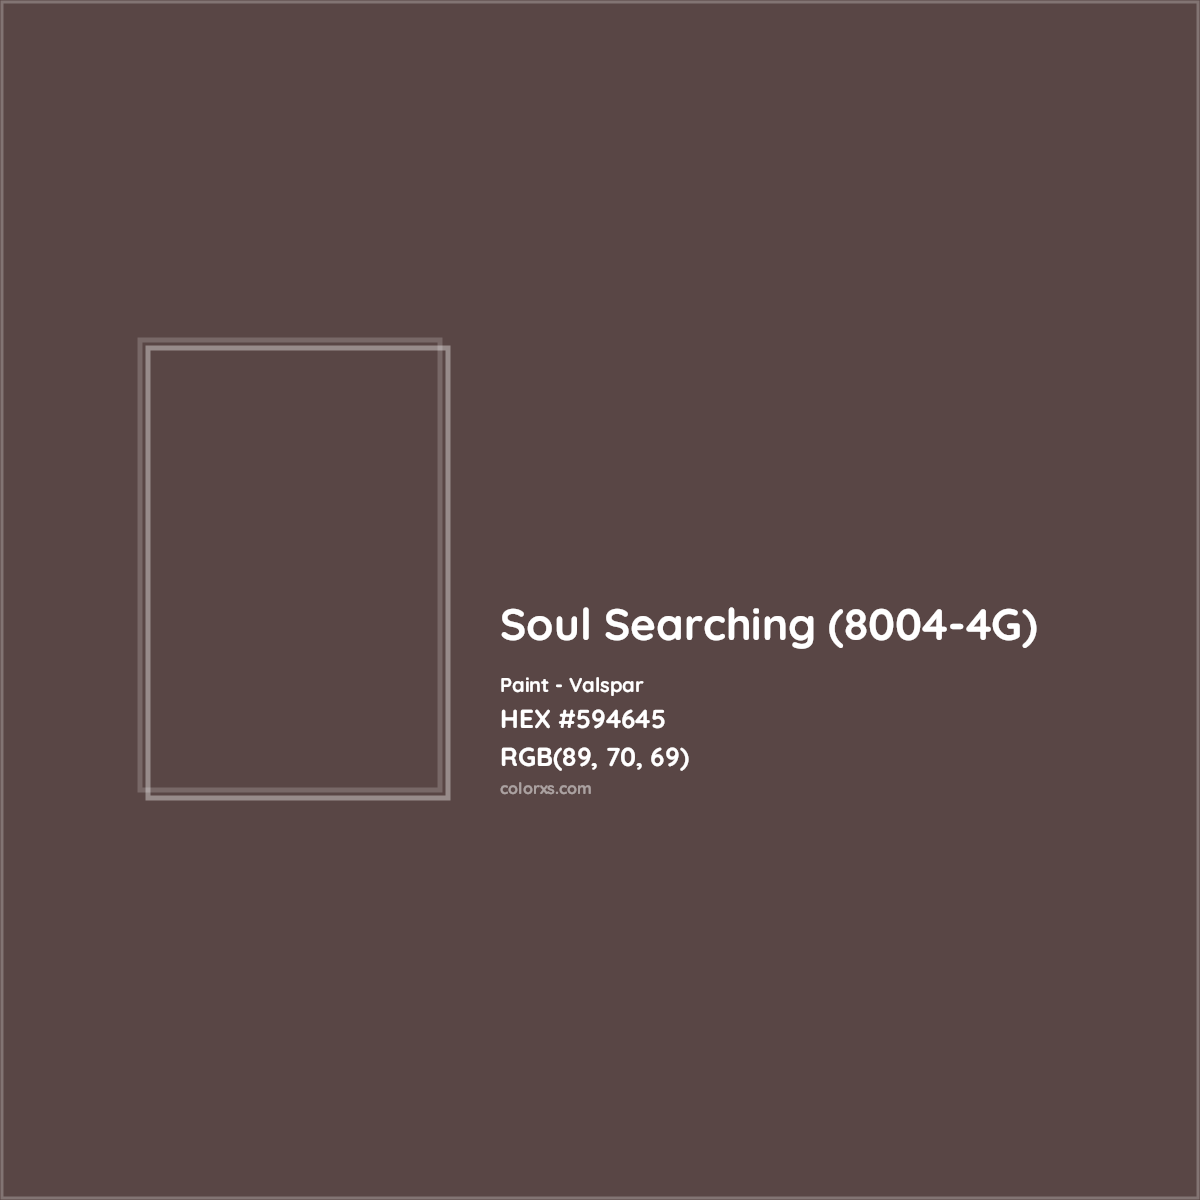 HEX #594645 Soul Searching (8004-4G) Paint Valspar - Color Code